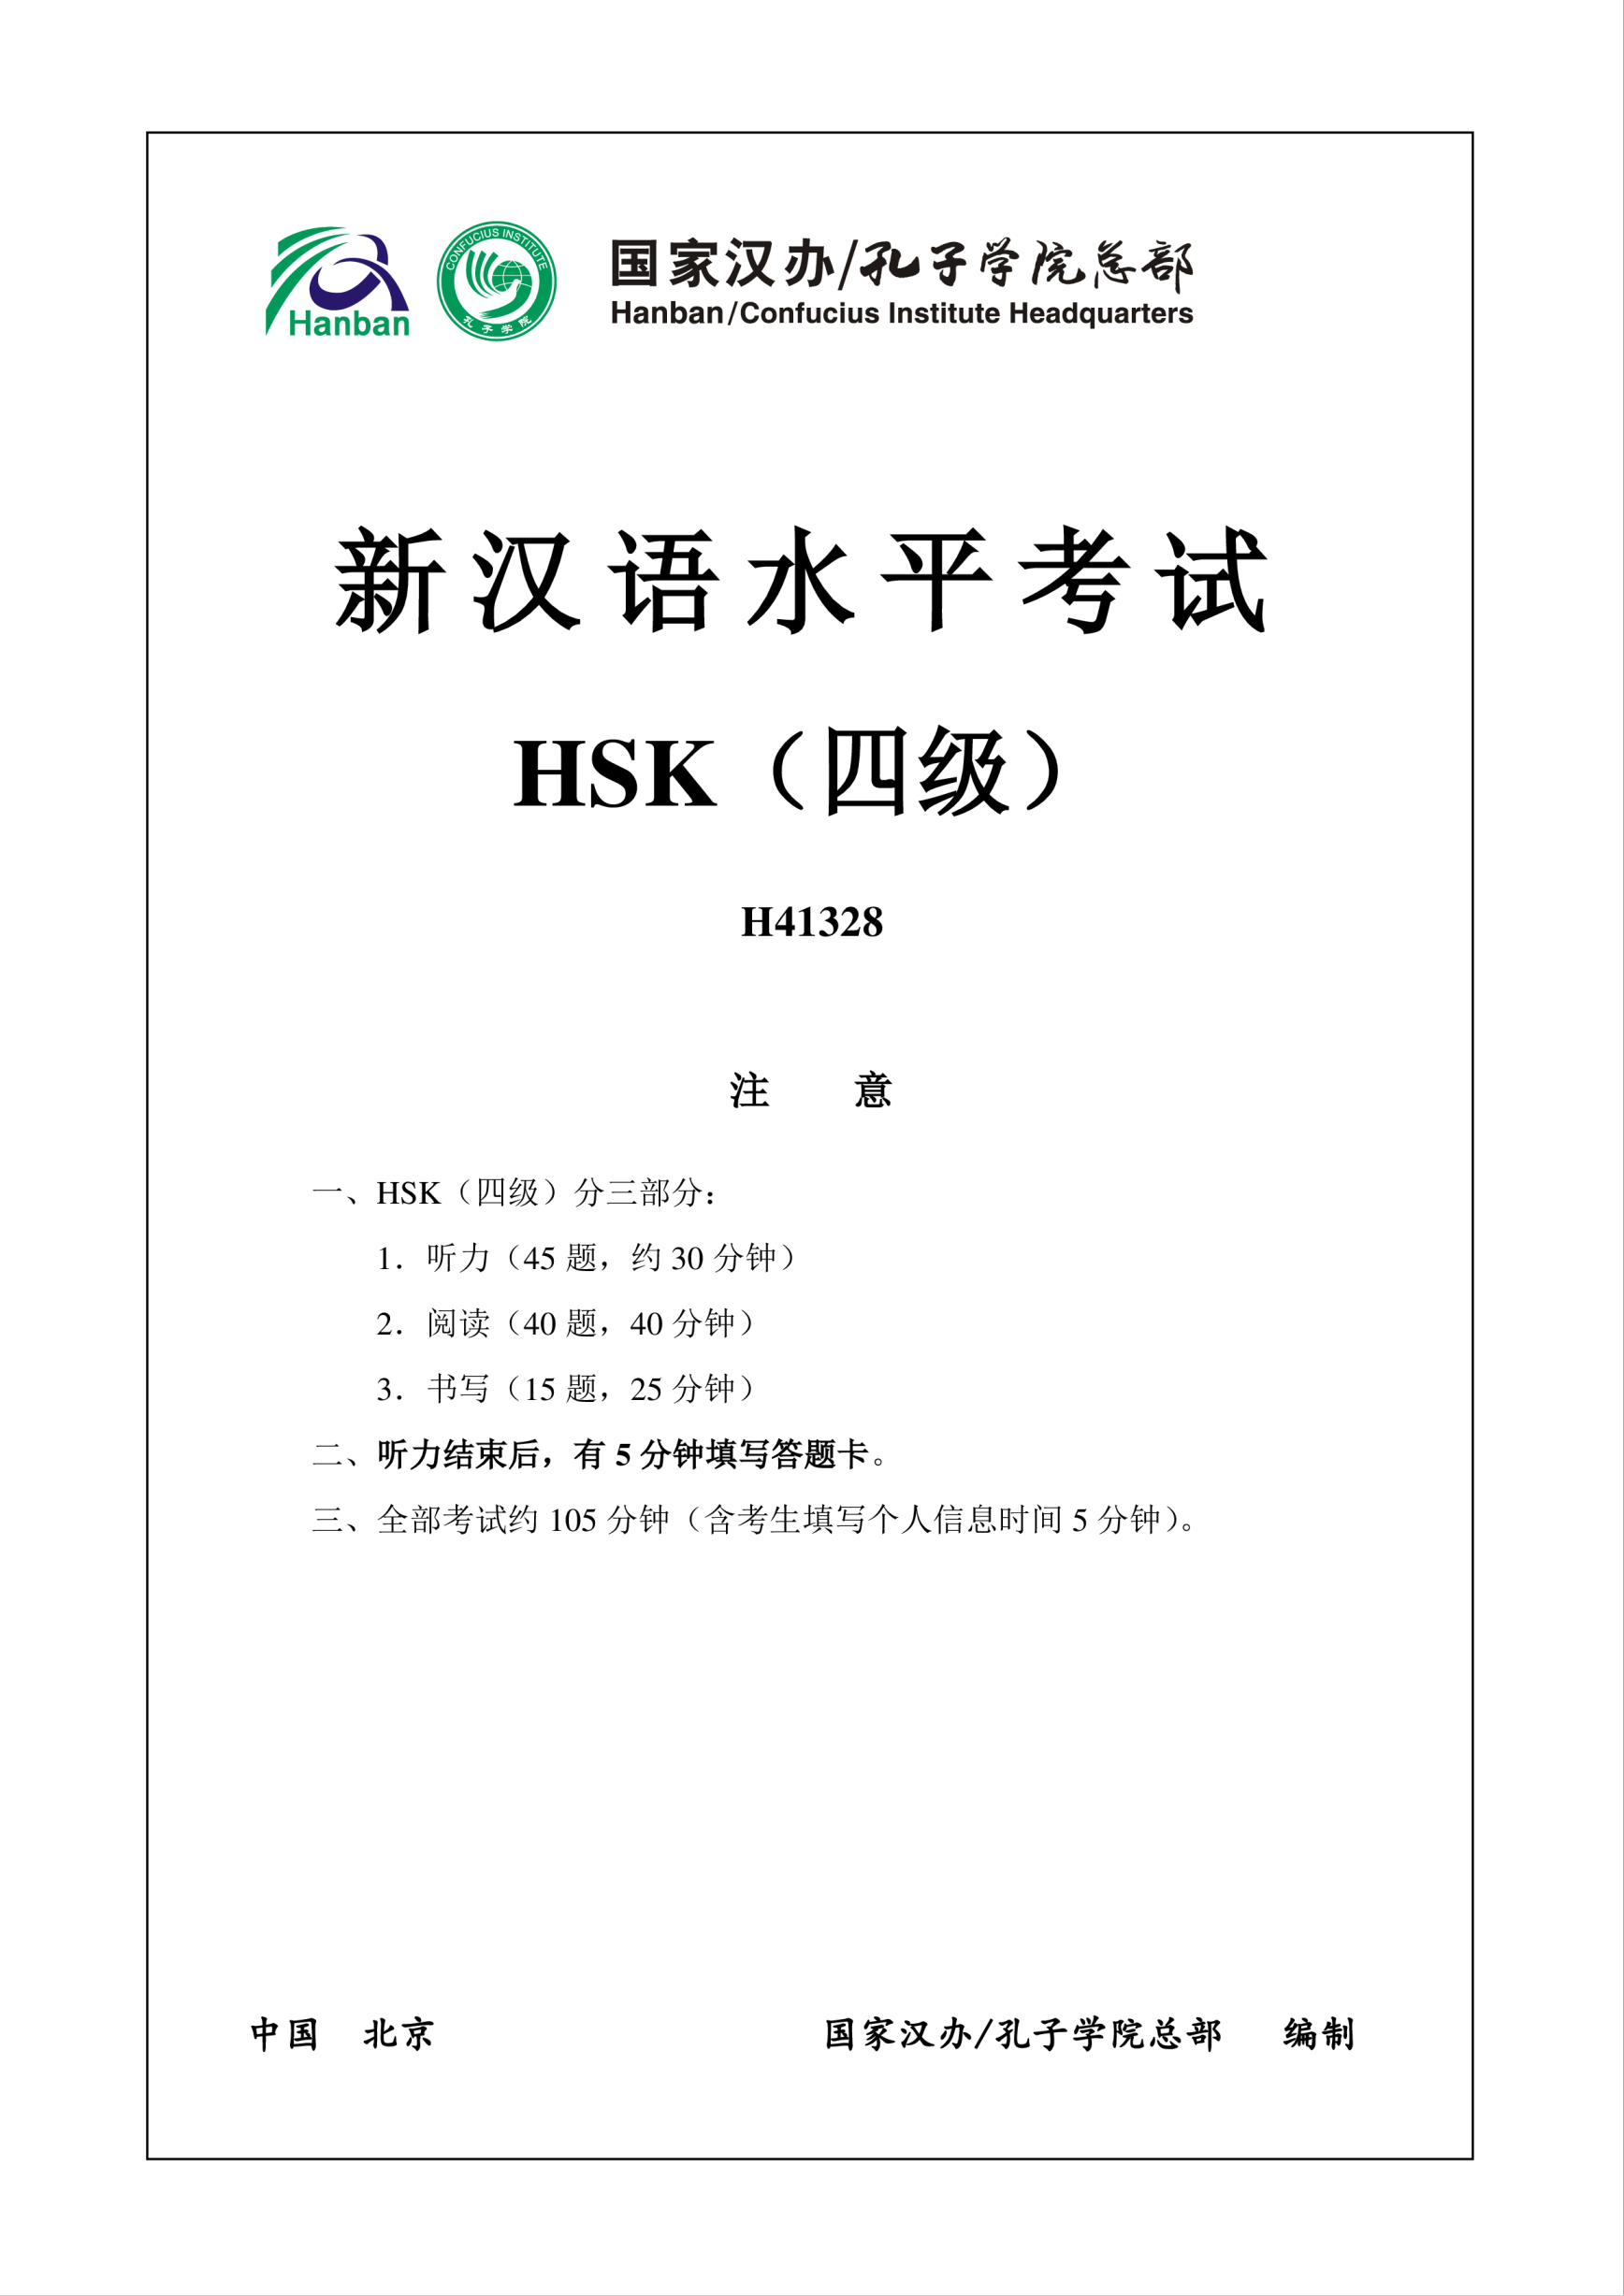 Vorschaubild der VorlageHSK4 Chinese Exam incl Audio and Answers # H41328